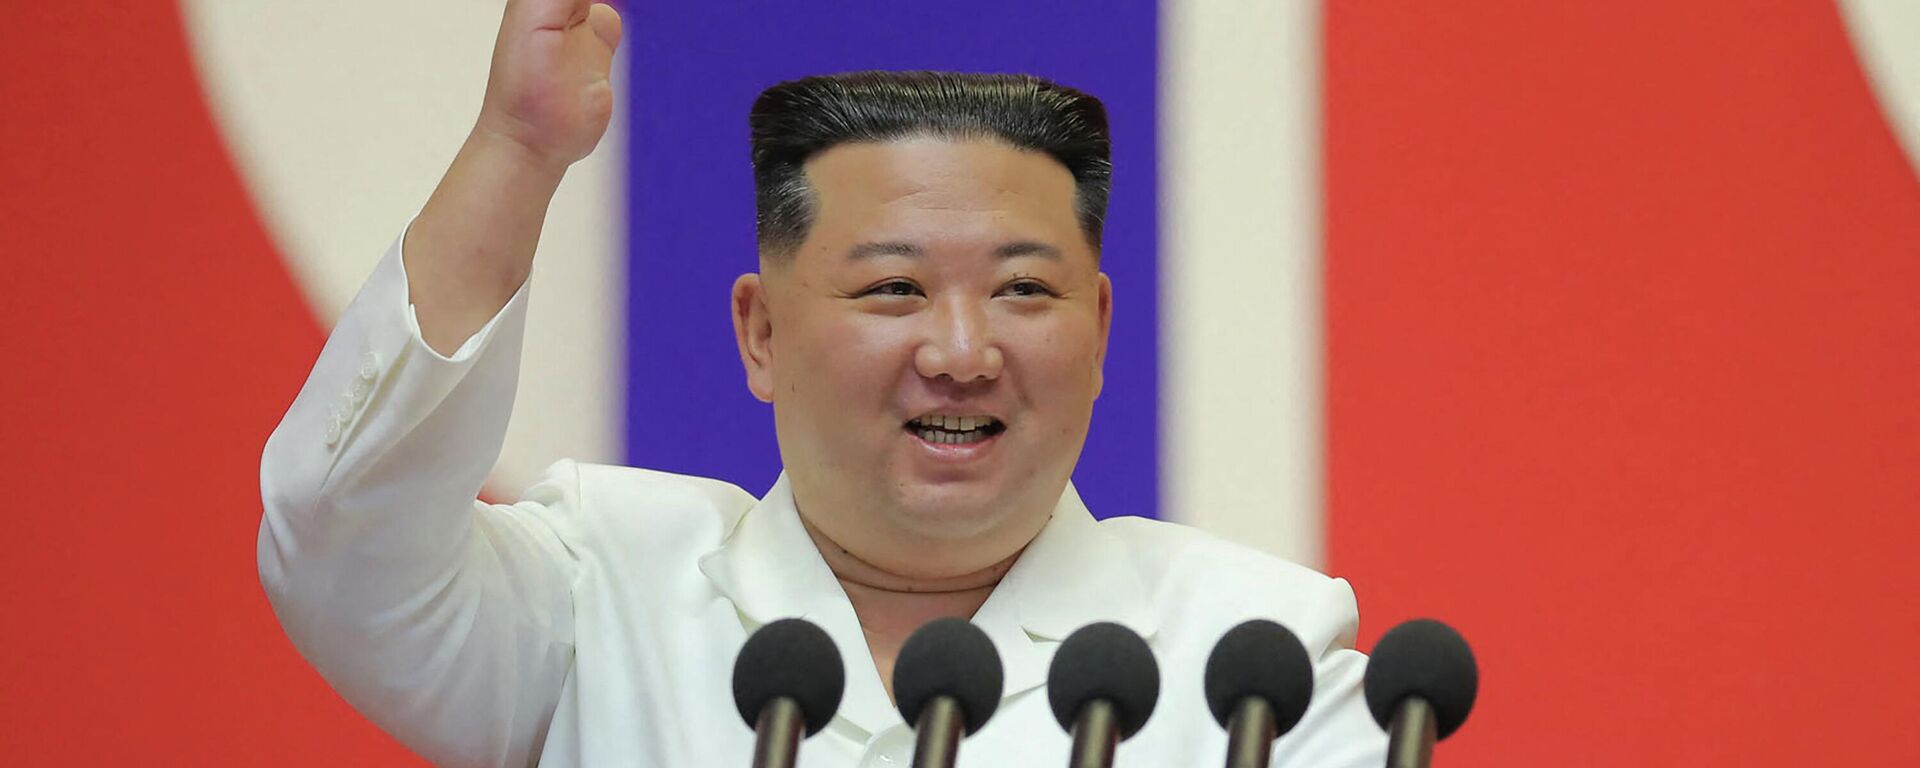 زعيم كوريا الشمالية، كيم جونغ أون، يلقي خطابا لتهنئة أعضاء القسم الطبي العسكري بالجيش الشعبي الكوري على المساهمة في منع انتشار (كوفيد-19) في بيونغ يانغ، 18 أغسطس/ آب 2022 - سبوتنيك عربي, 1920, 28.03.2023